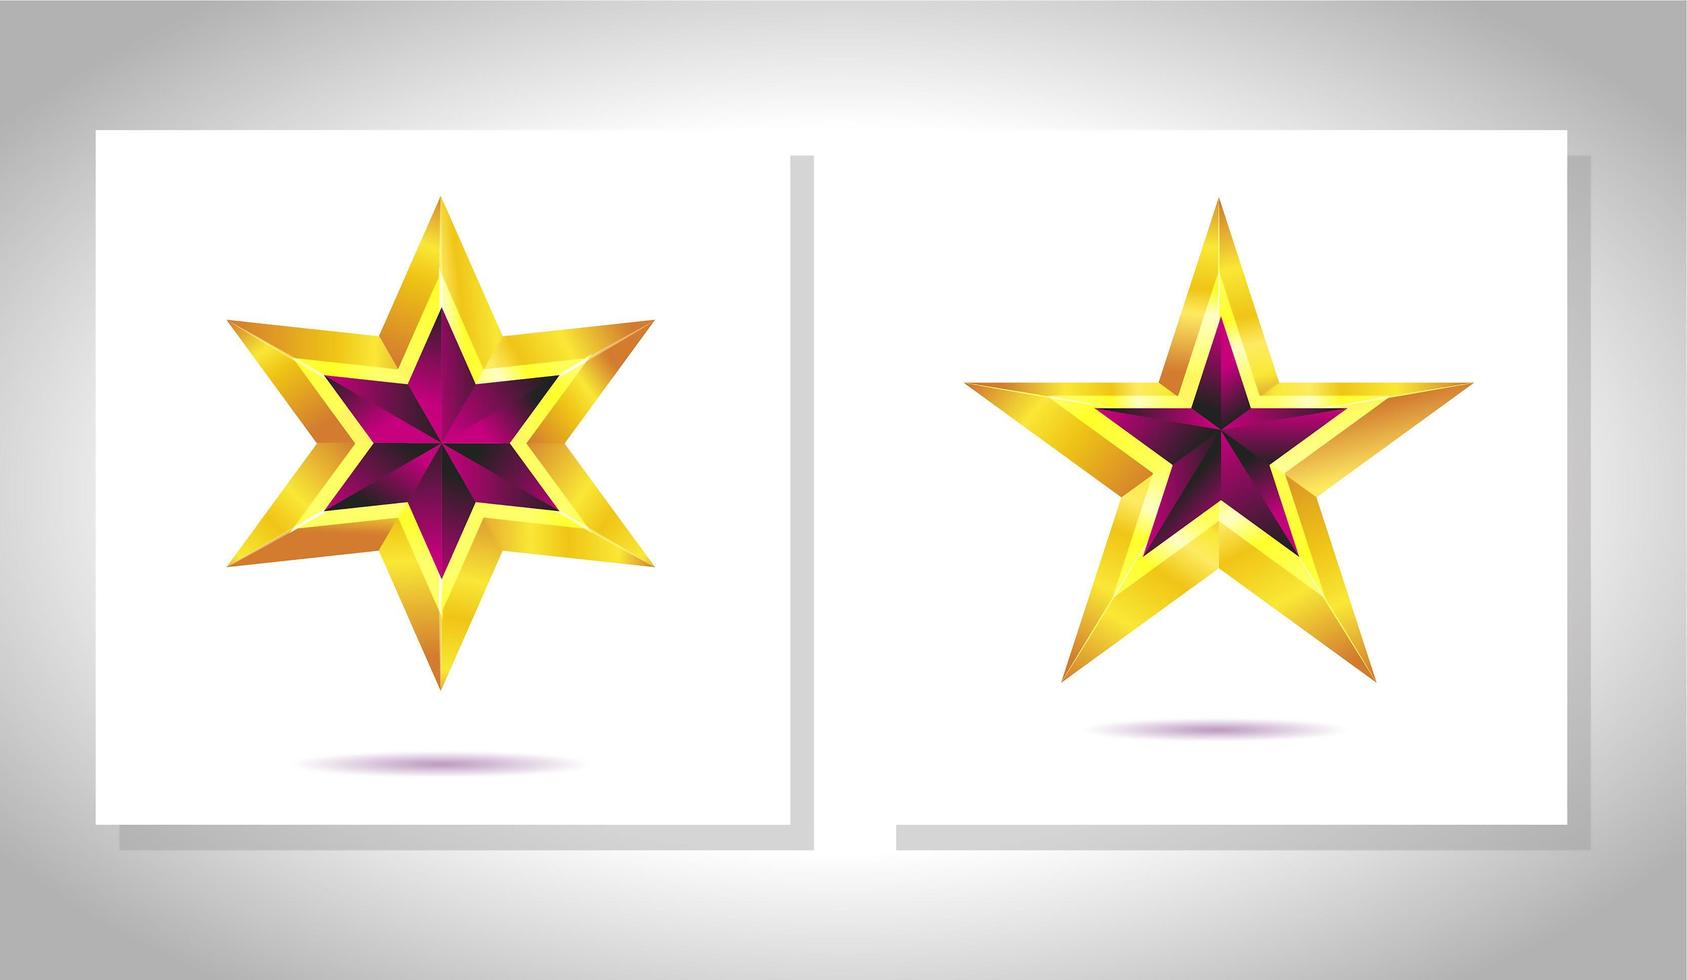 conjunto de vetores de estrelas douradas metálicas realistas isoladas no fundo branco. ícone de estrela do troféu 3d amarelo brilhante de Natal. símbolo de liderança.